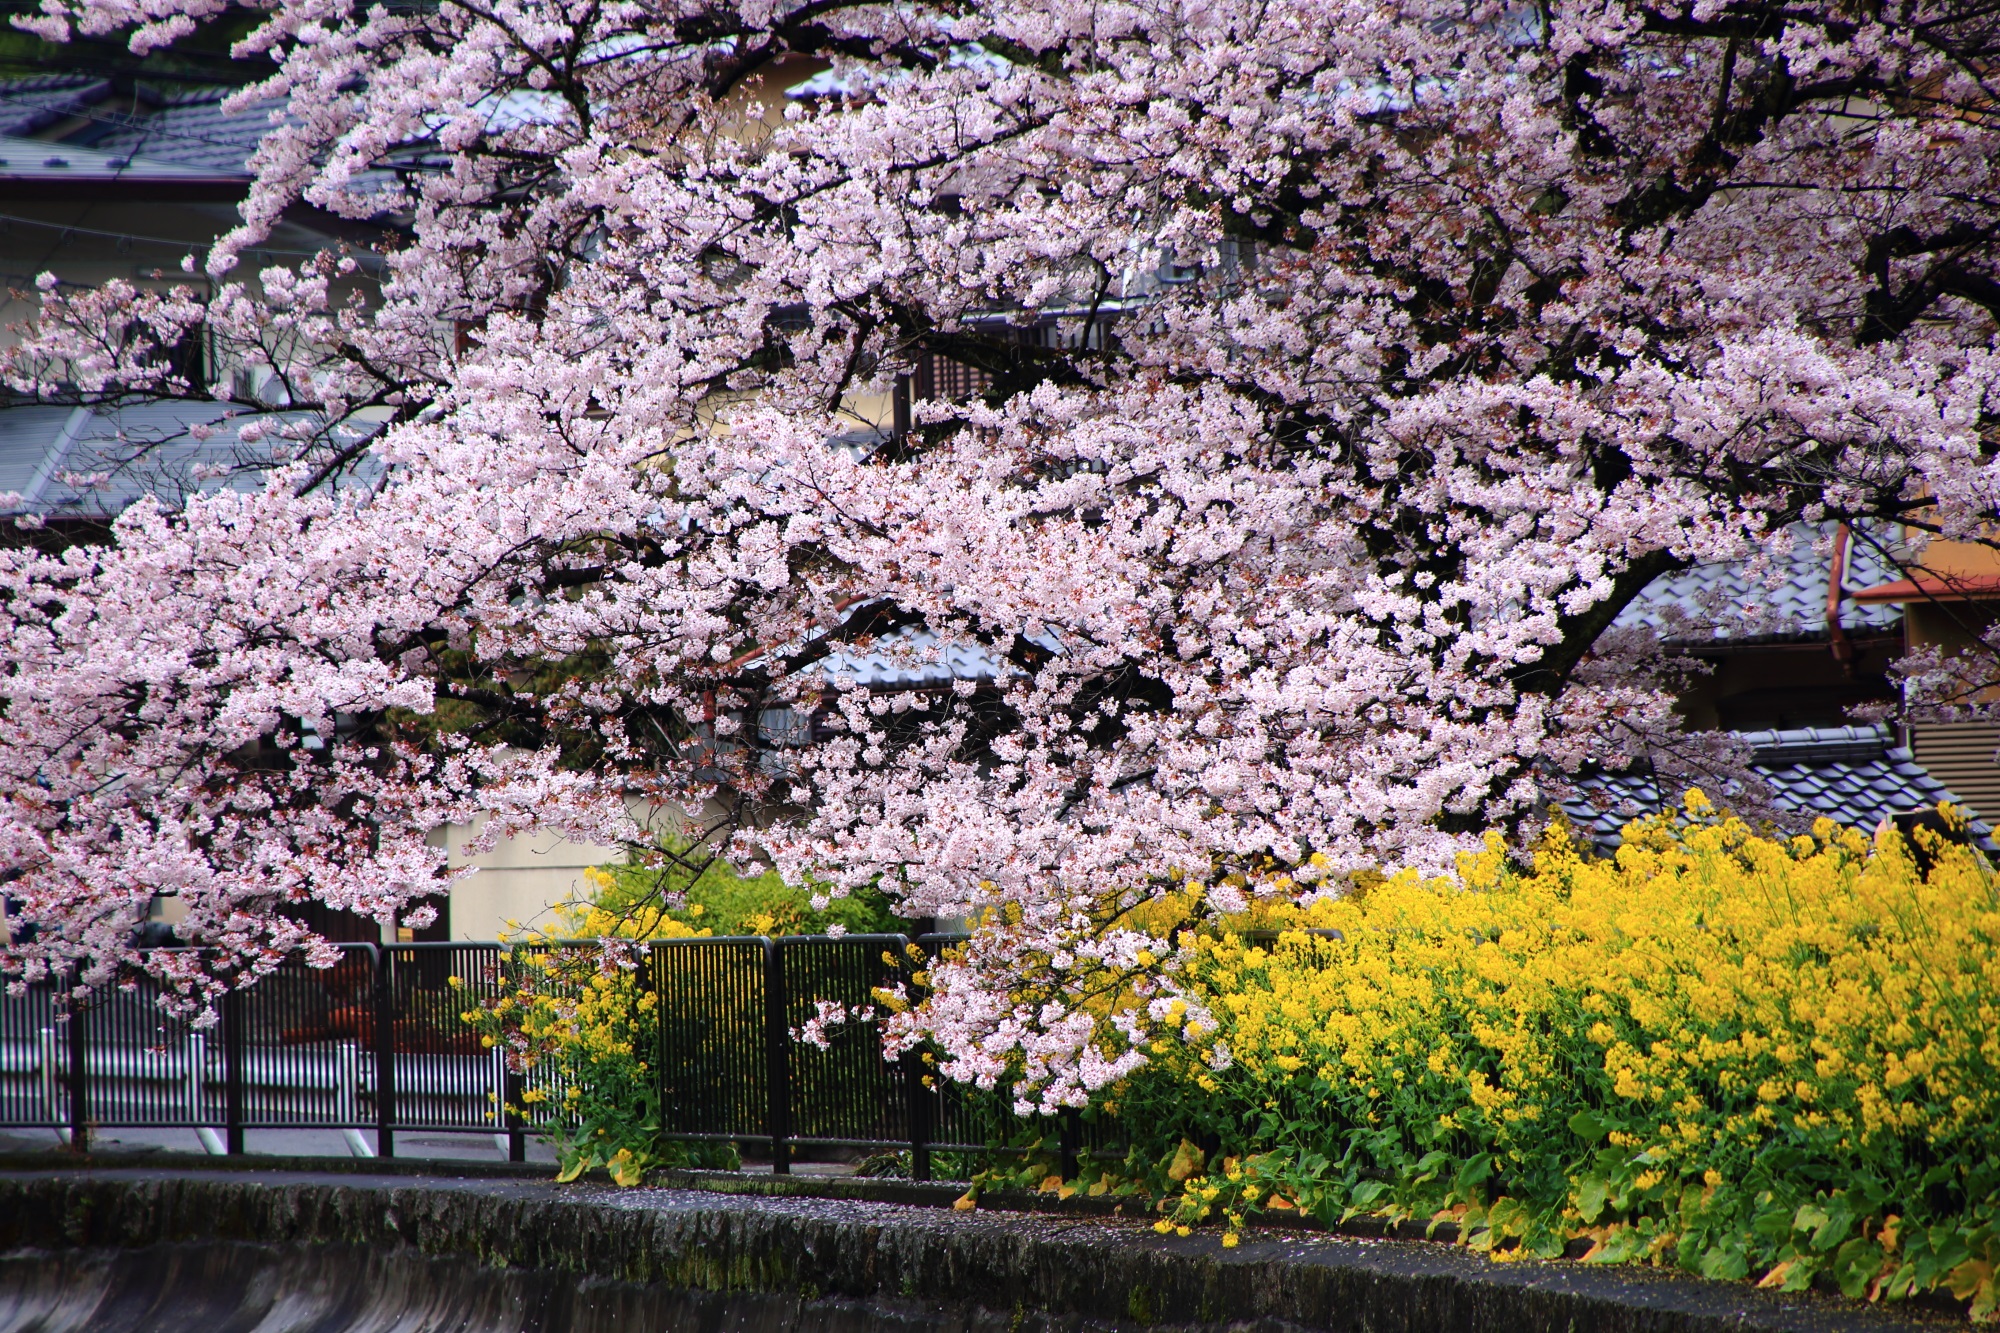 桜の華やかなピンクと菜の花の鮮やかな黄色の美しいコントラスト